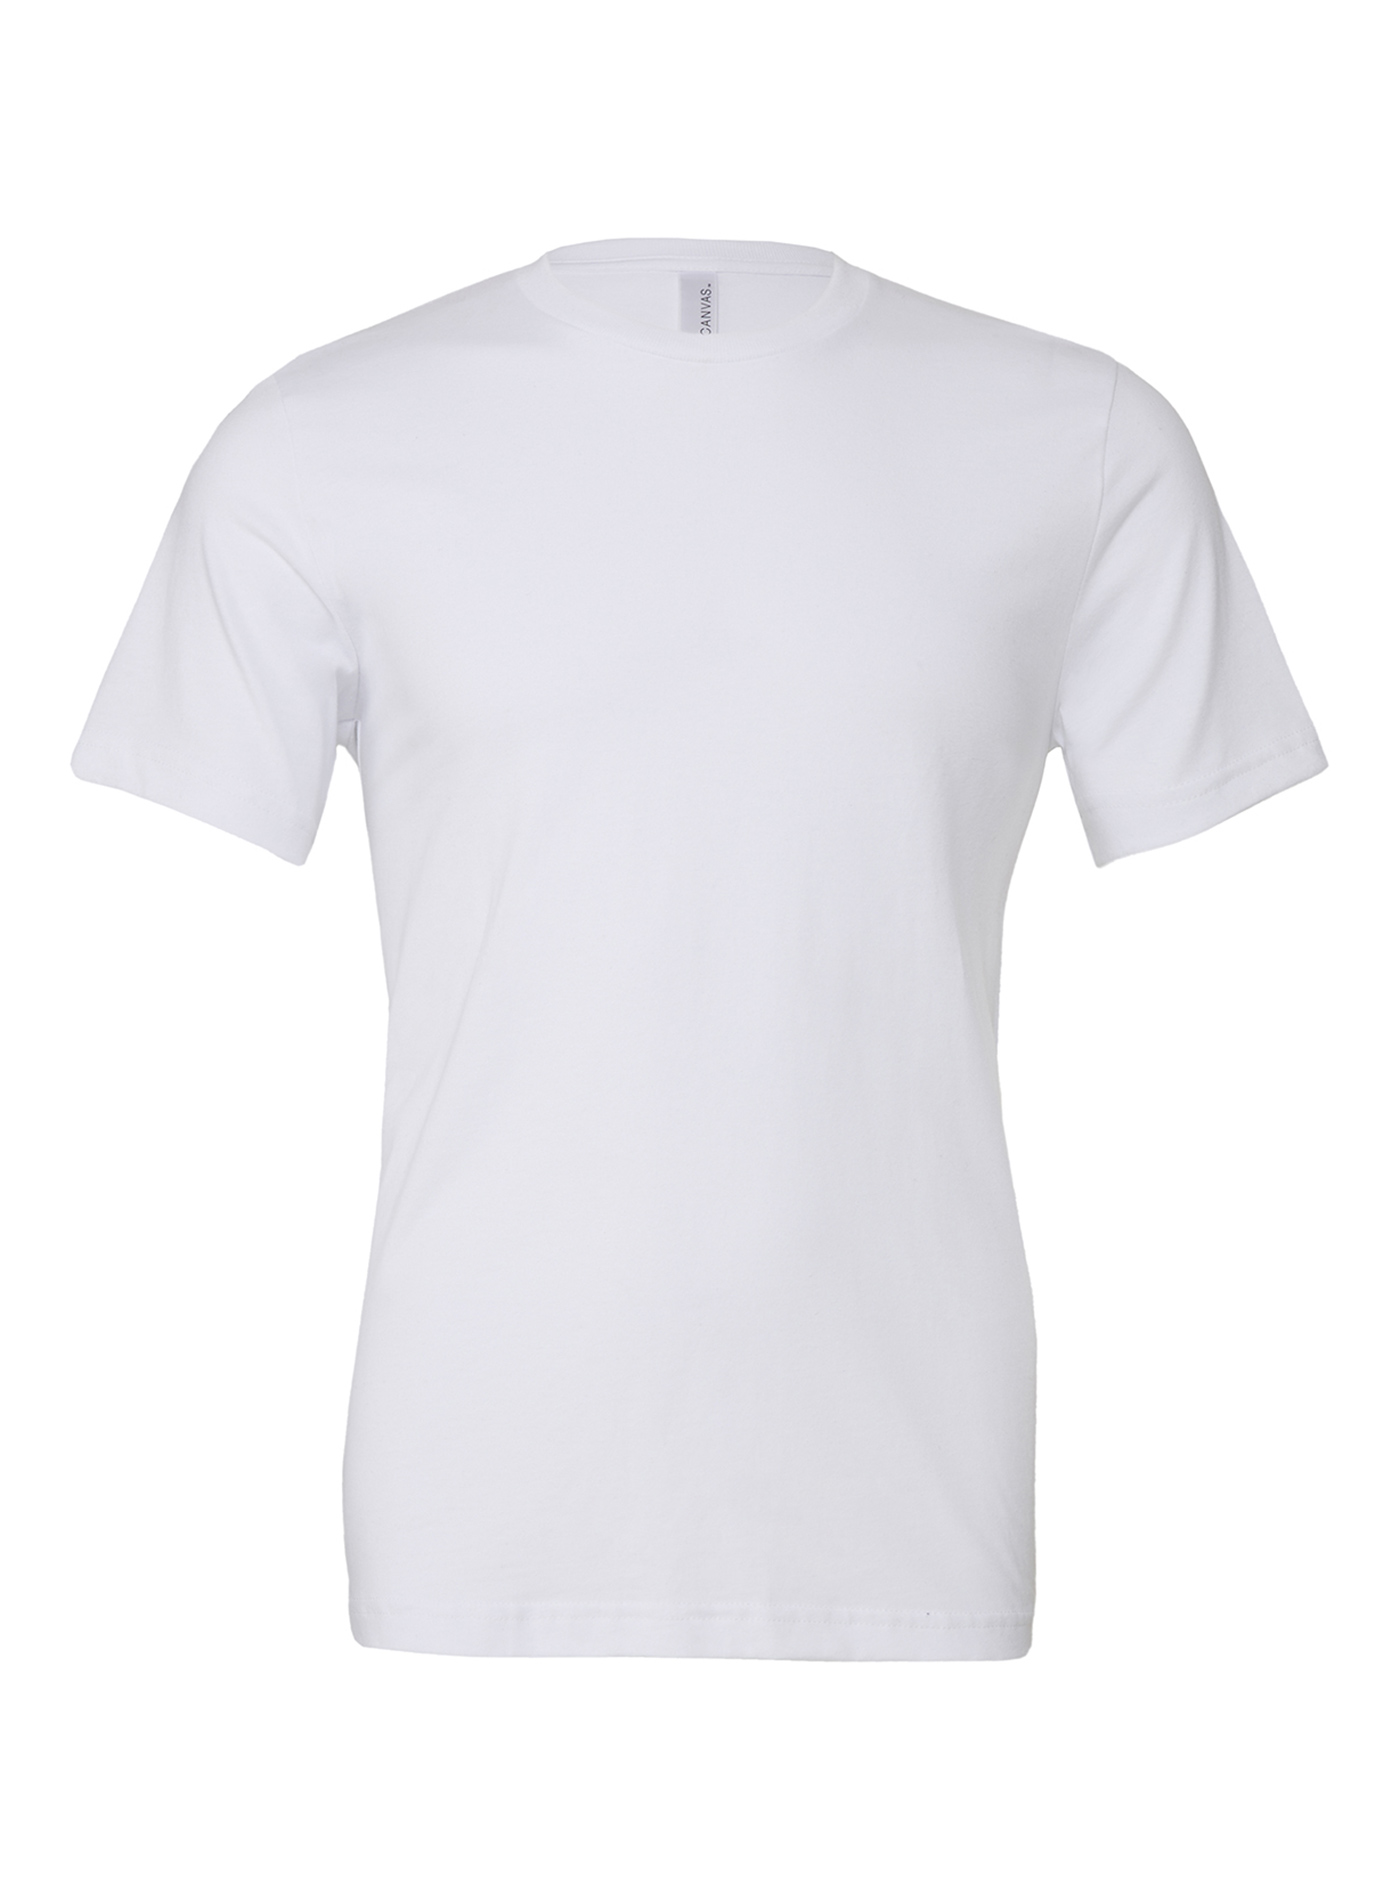 Unisex tričko Jersey - Bílá M